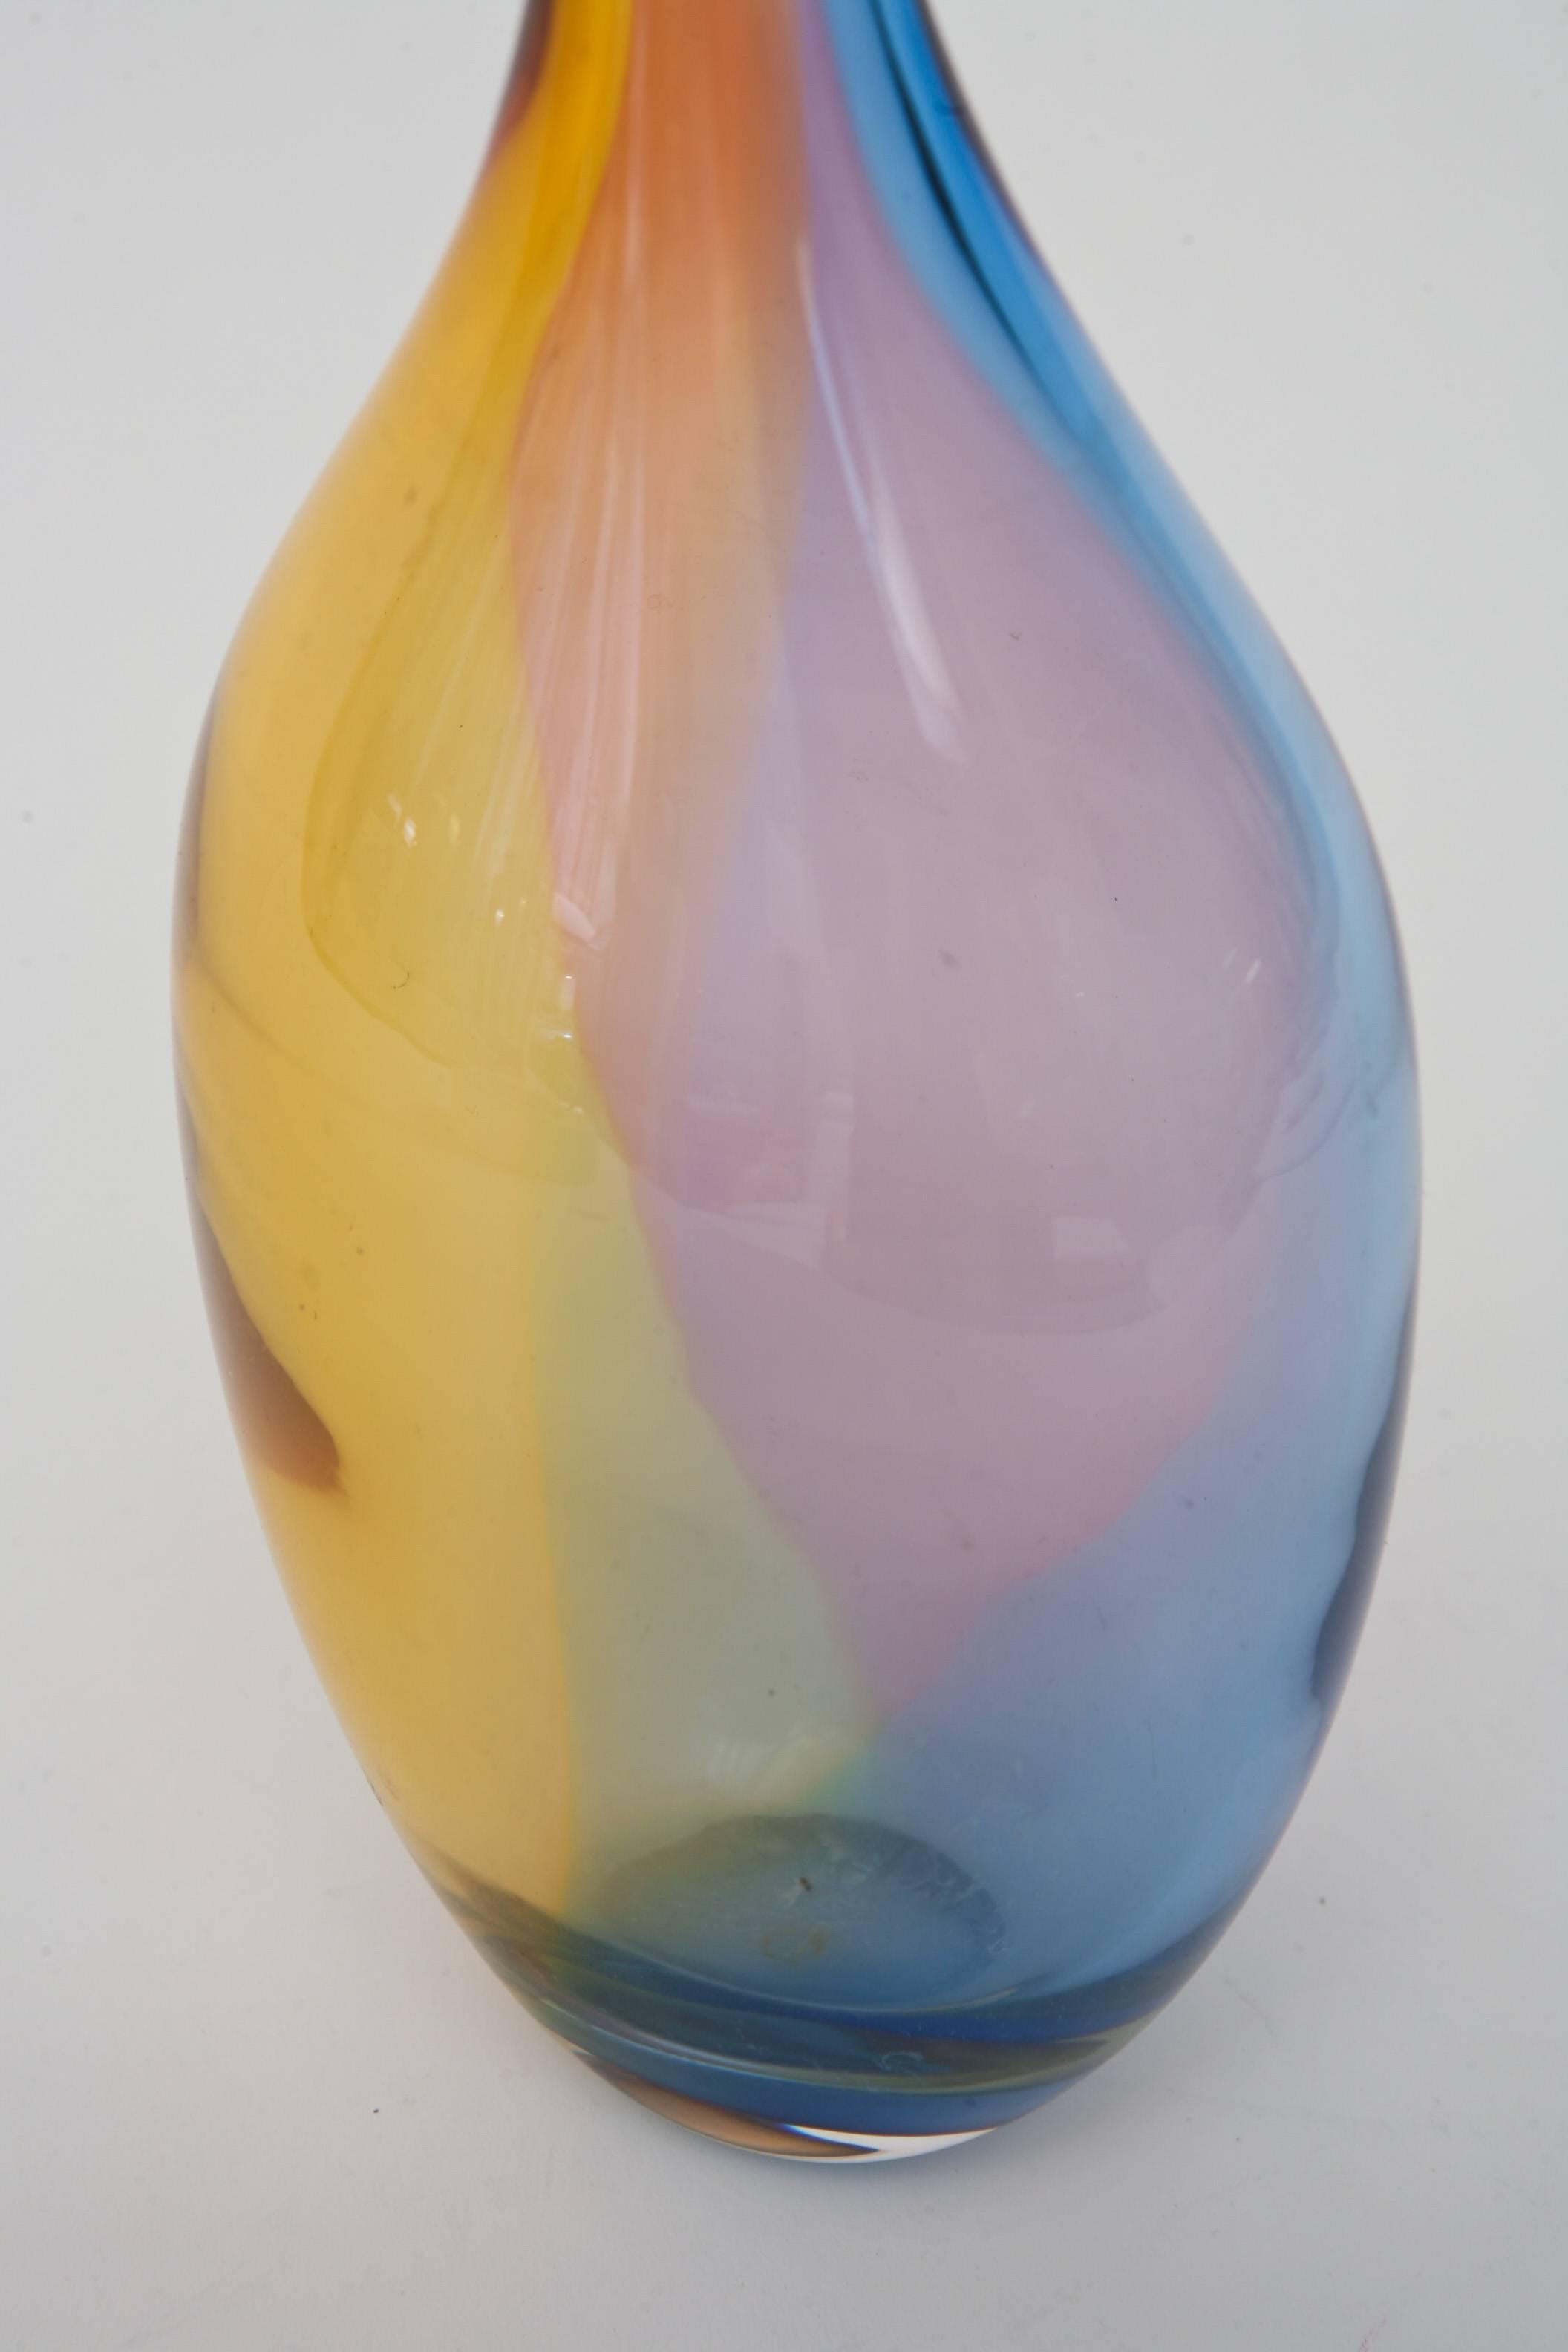 Late 20th Century Kjell Engman for Kosta Boda Rainbow Glass Vessel or Glass Object Vase